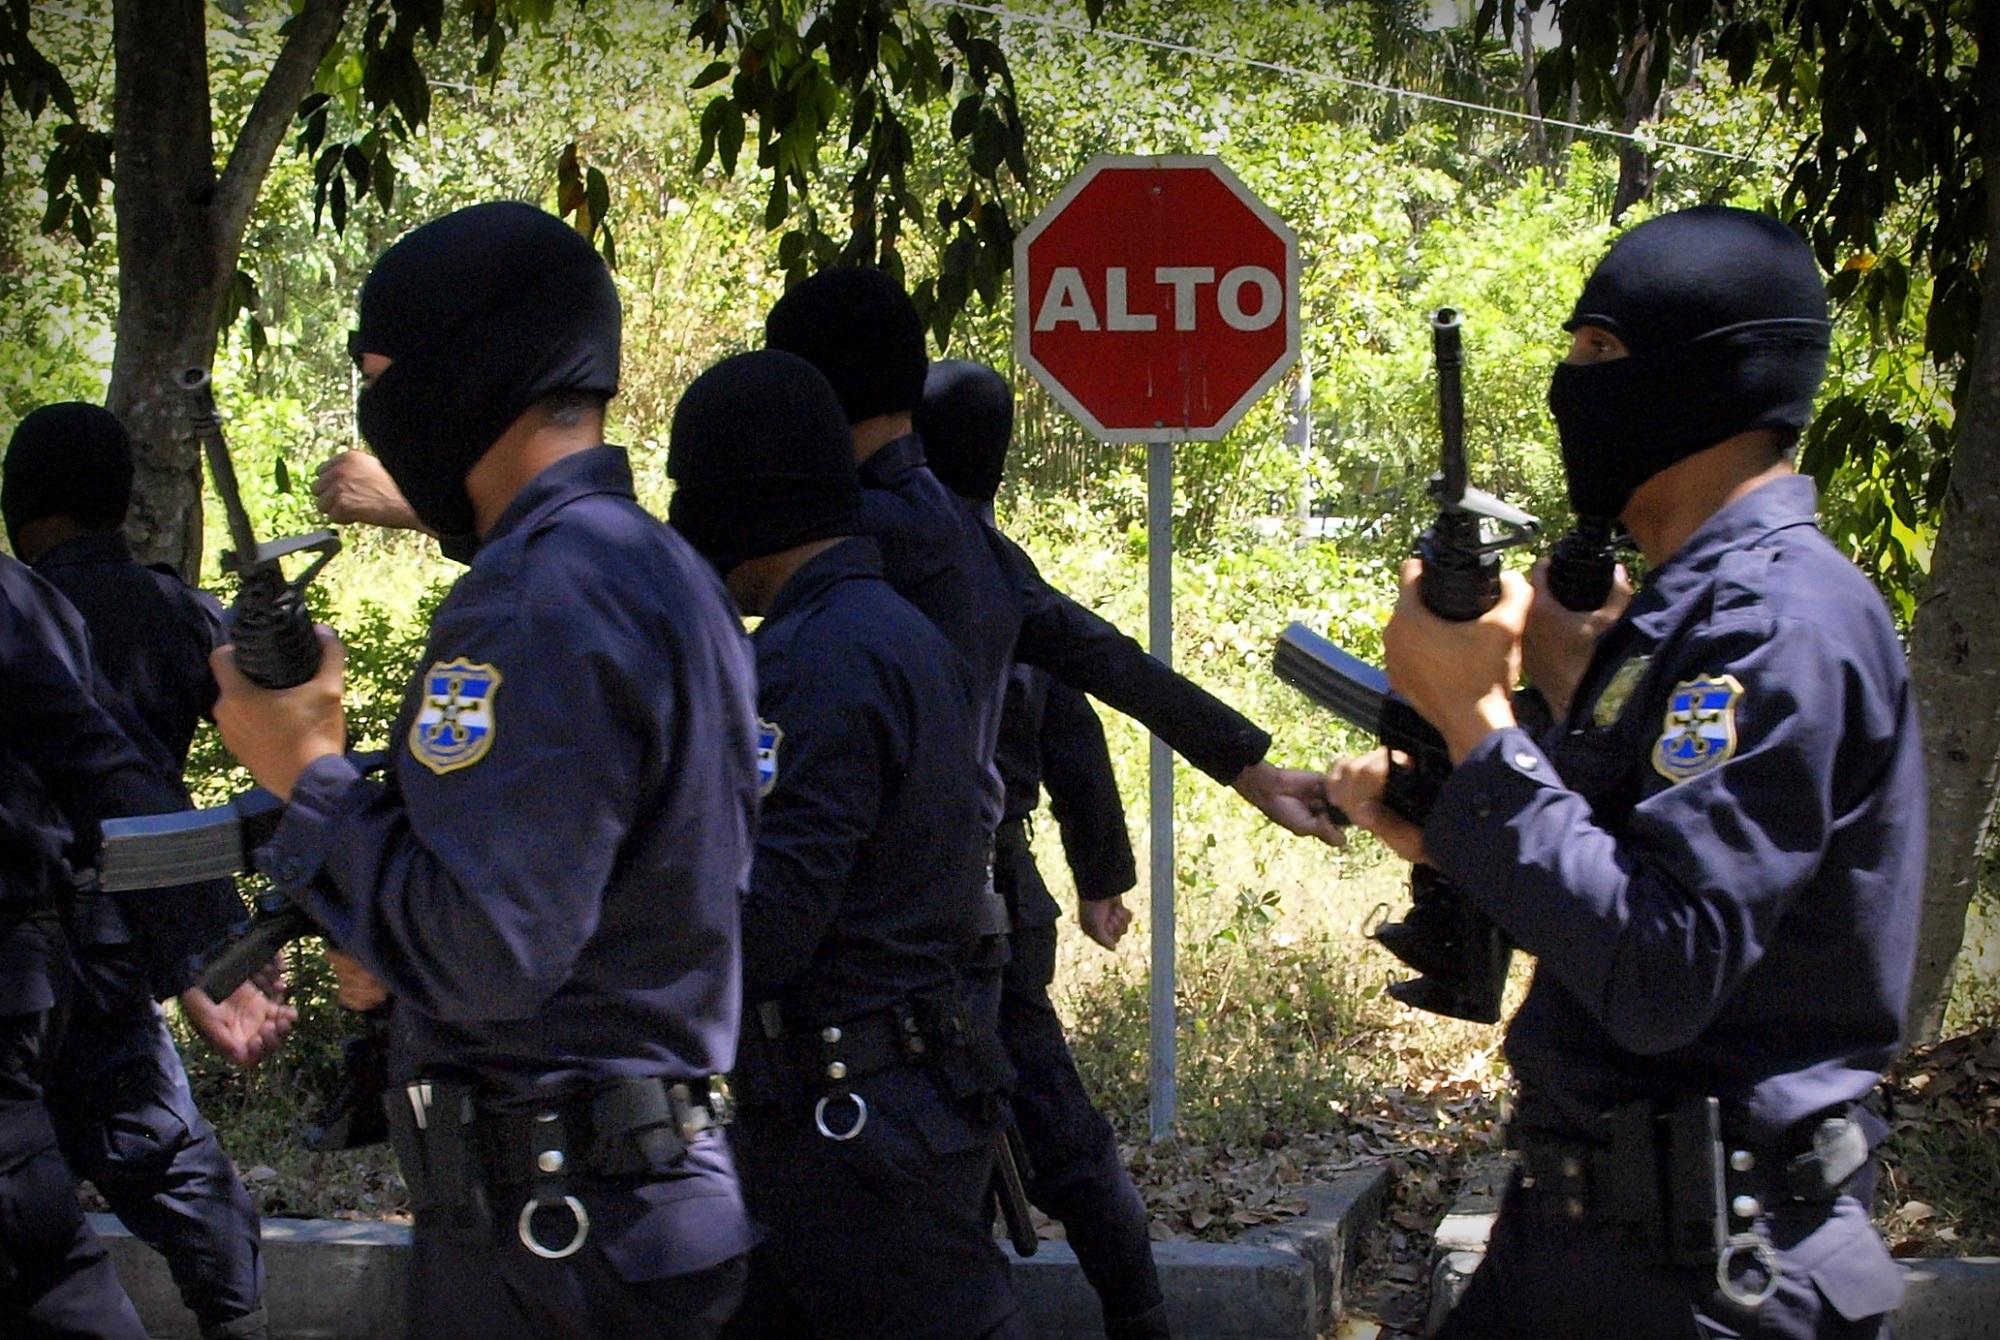 La Policía Nacional Civil es la institución pública que más denuncias recibe en la Procuraduría para la Defensa de los Derechos Humanos. Foto Roberto Valencia.